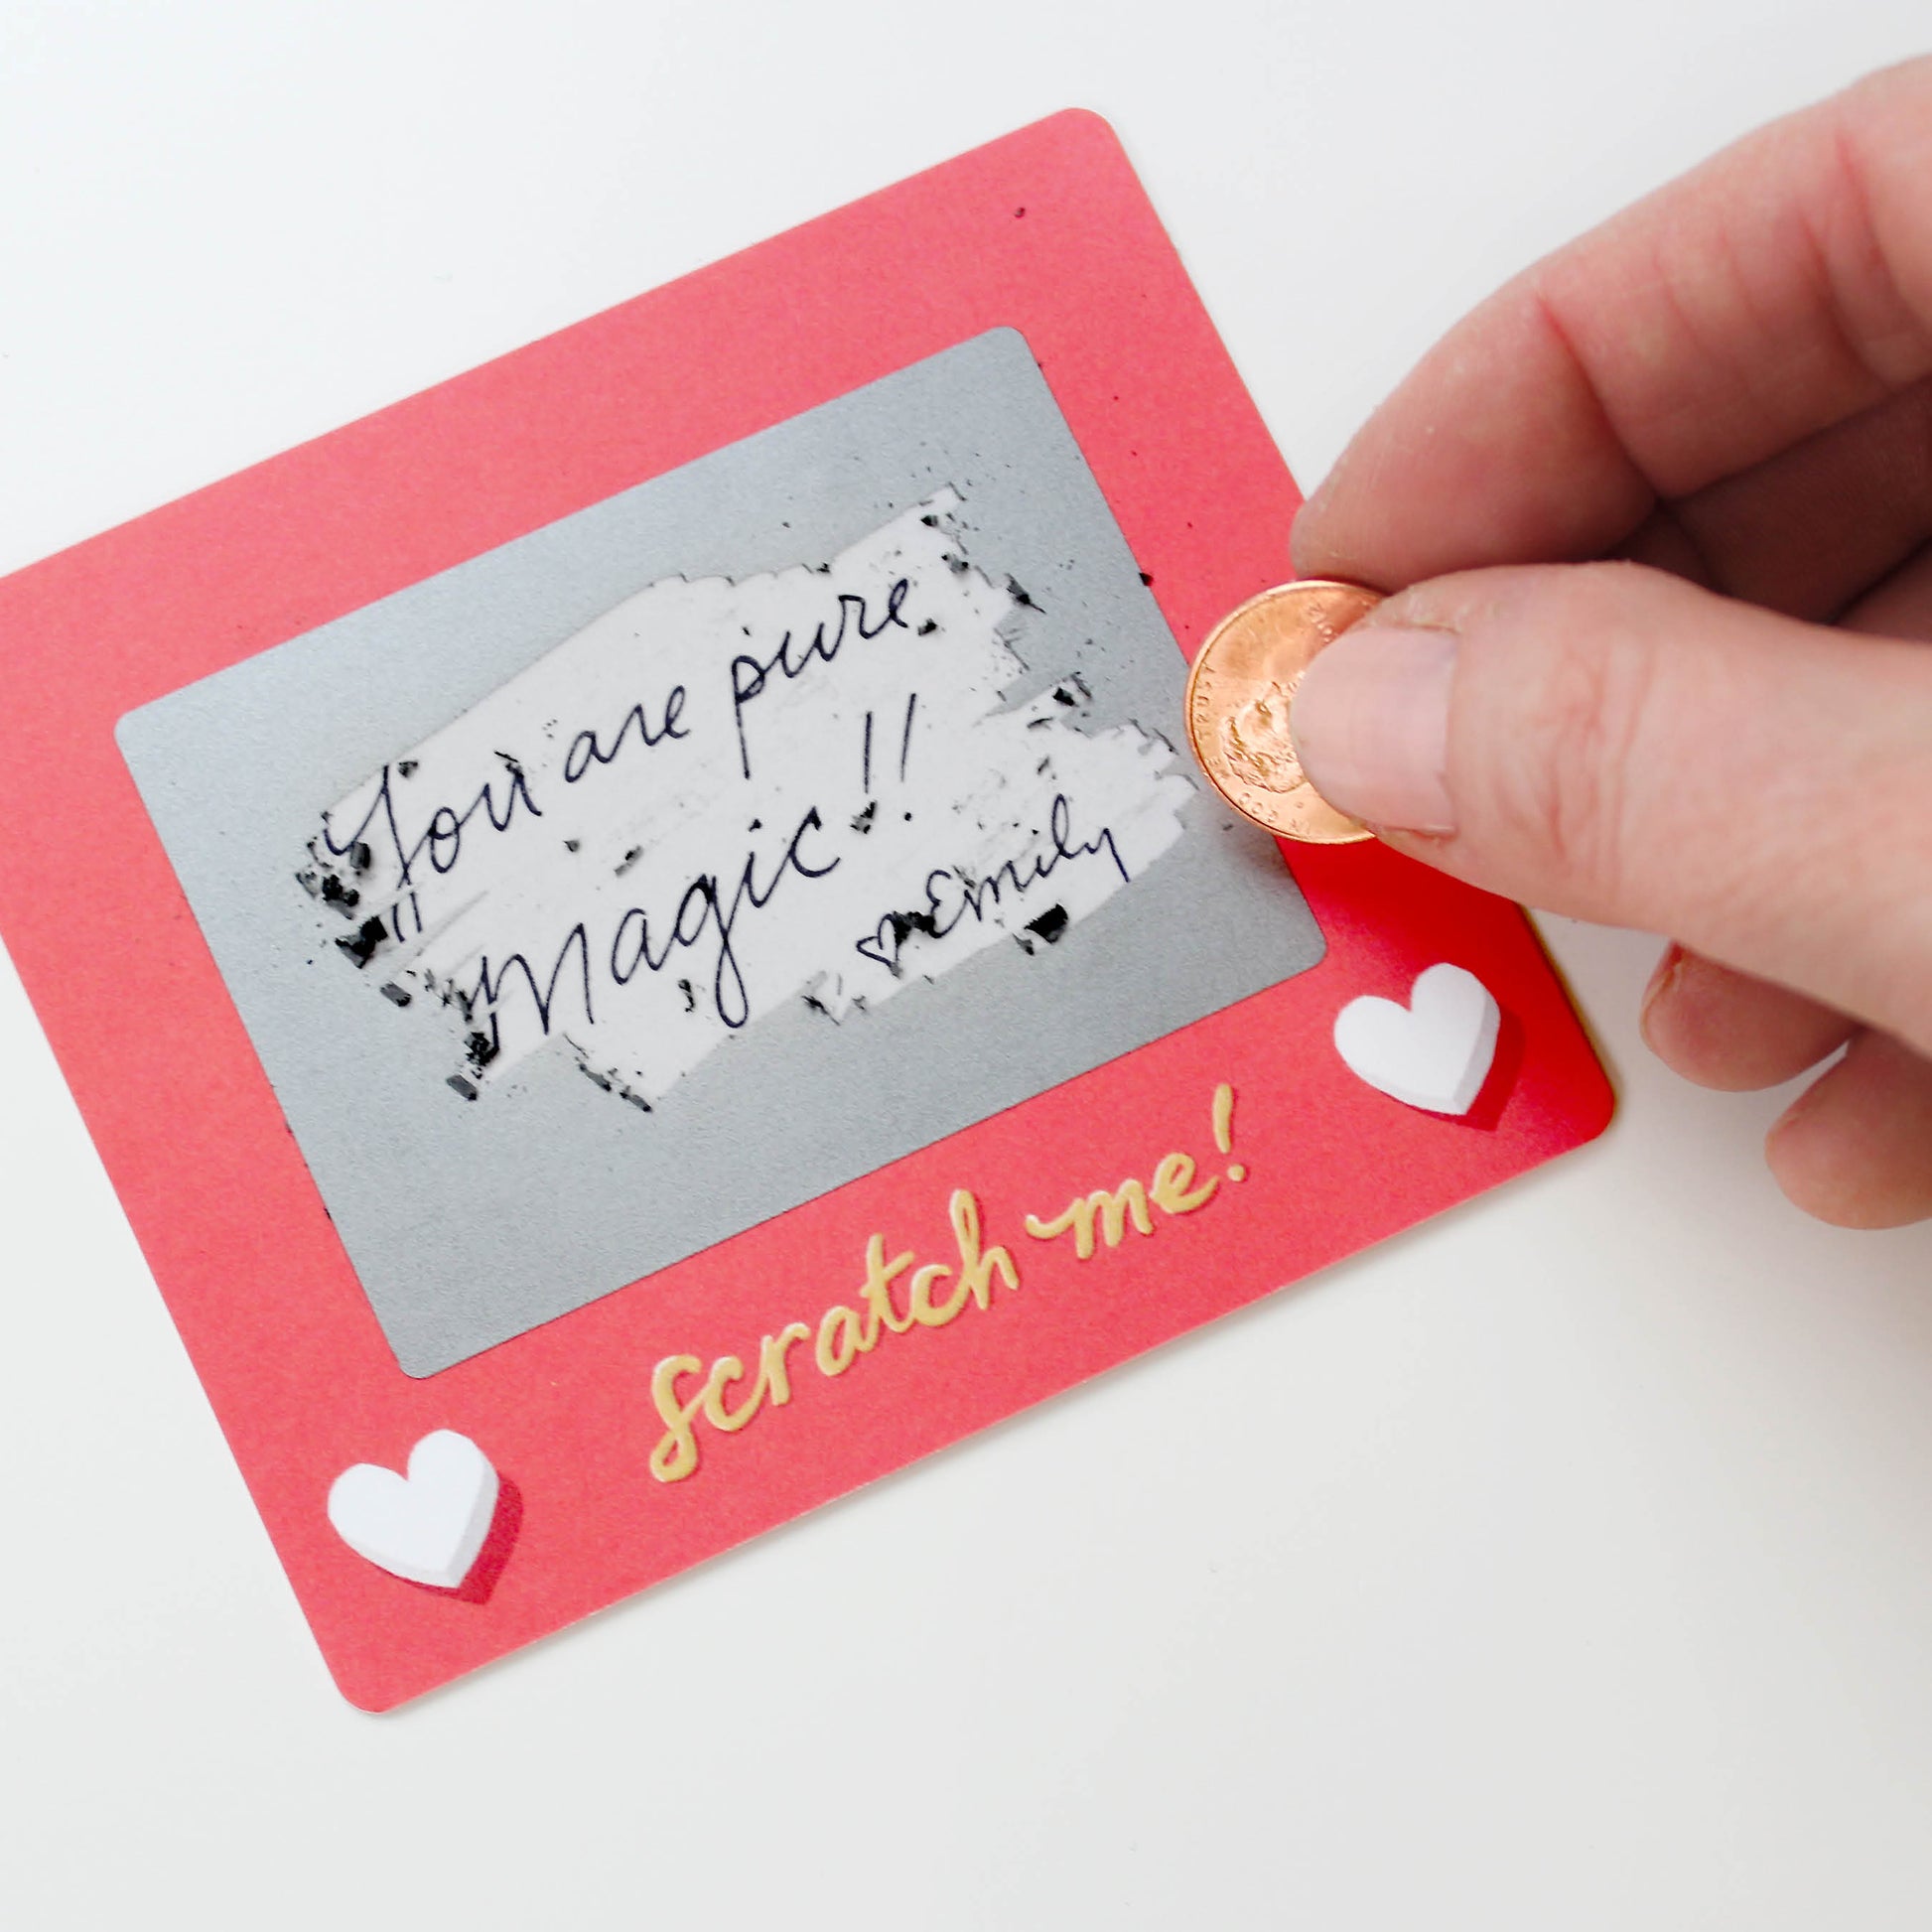 Scratch-a-Sketch scratch off notecards, fun lunchbox note cards